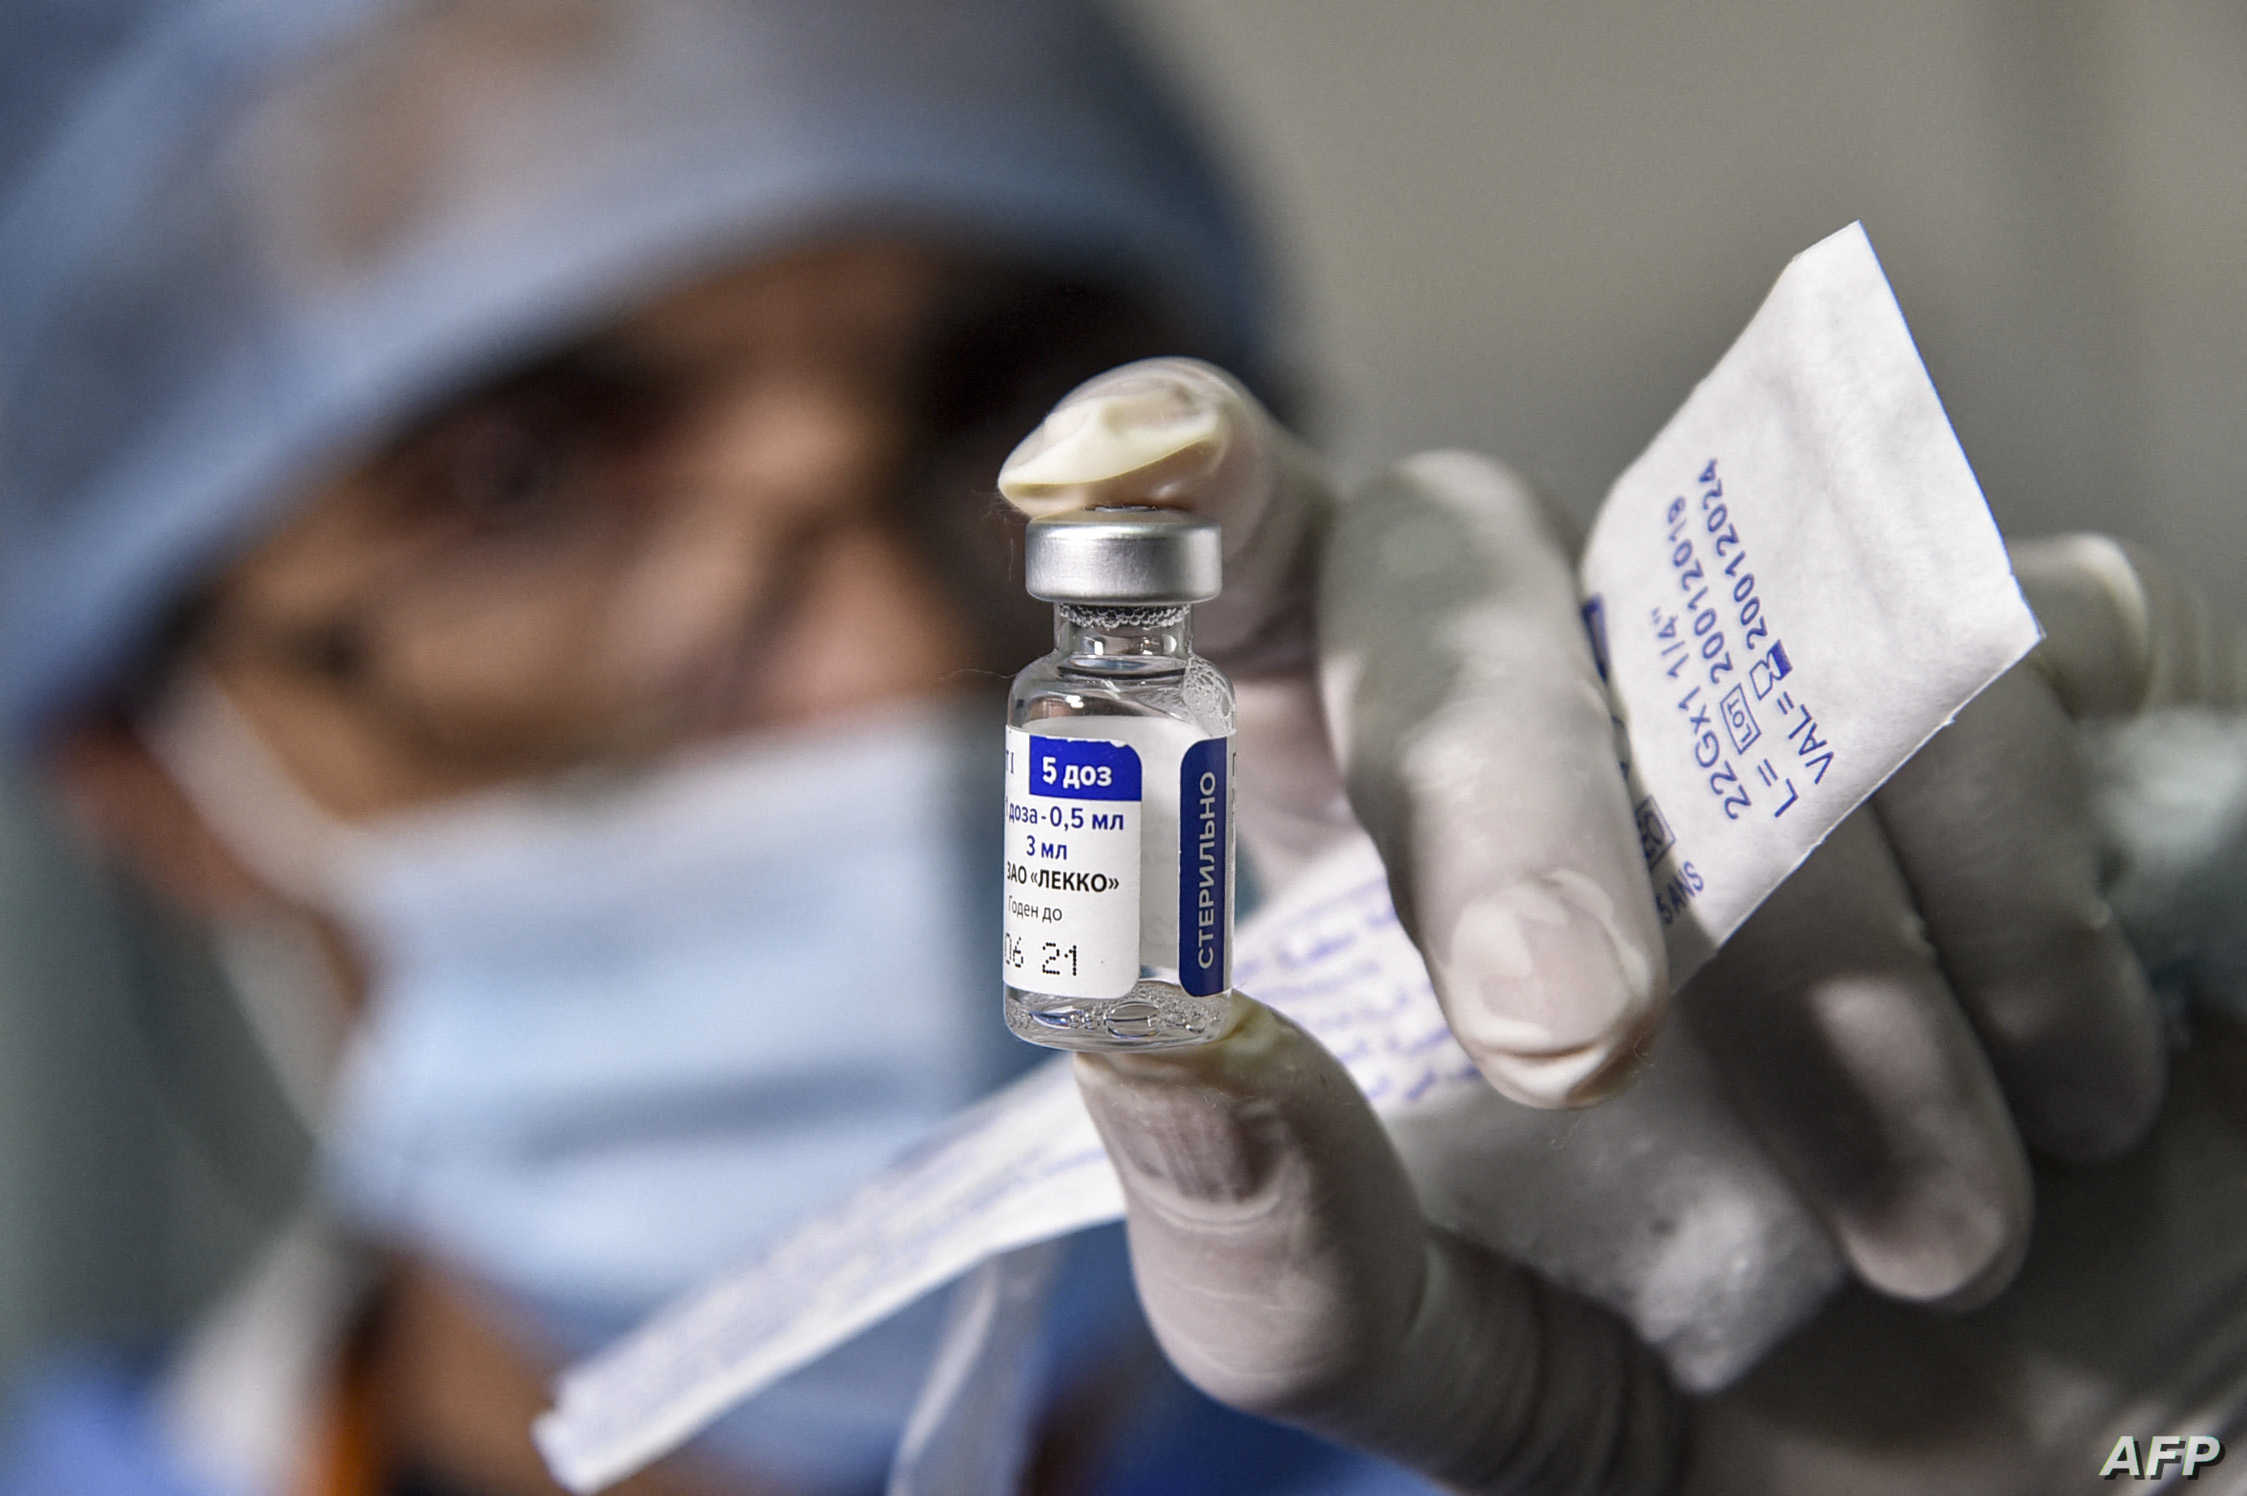 الصحة: مؤشرات عن قرب اعتماد السعودية للقاح "سينوفارم" و الأردنيون: "لو بدها تشتي كان غيمت"